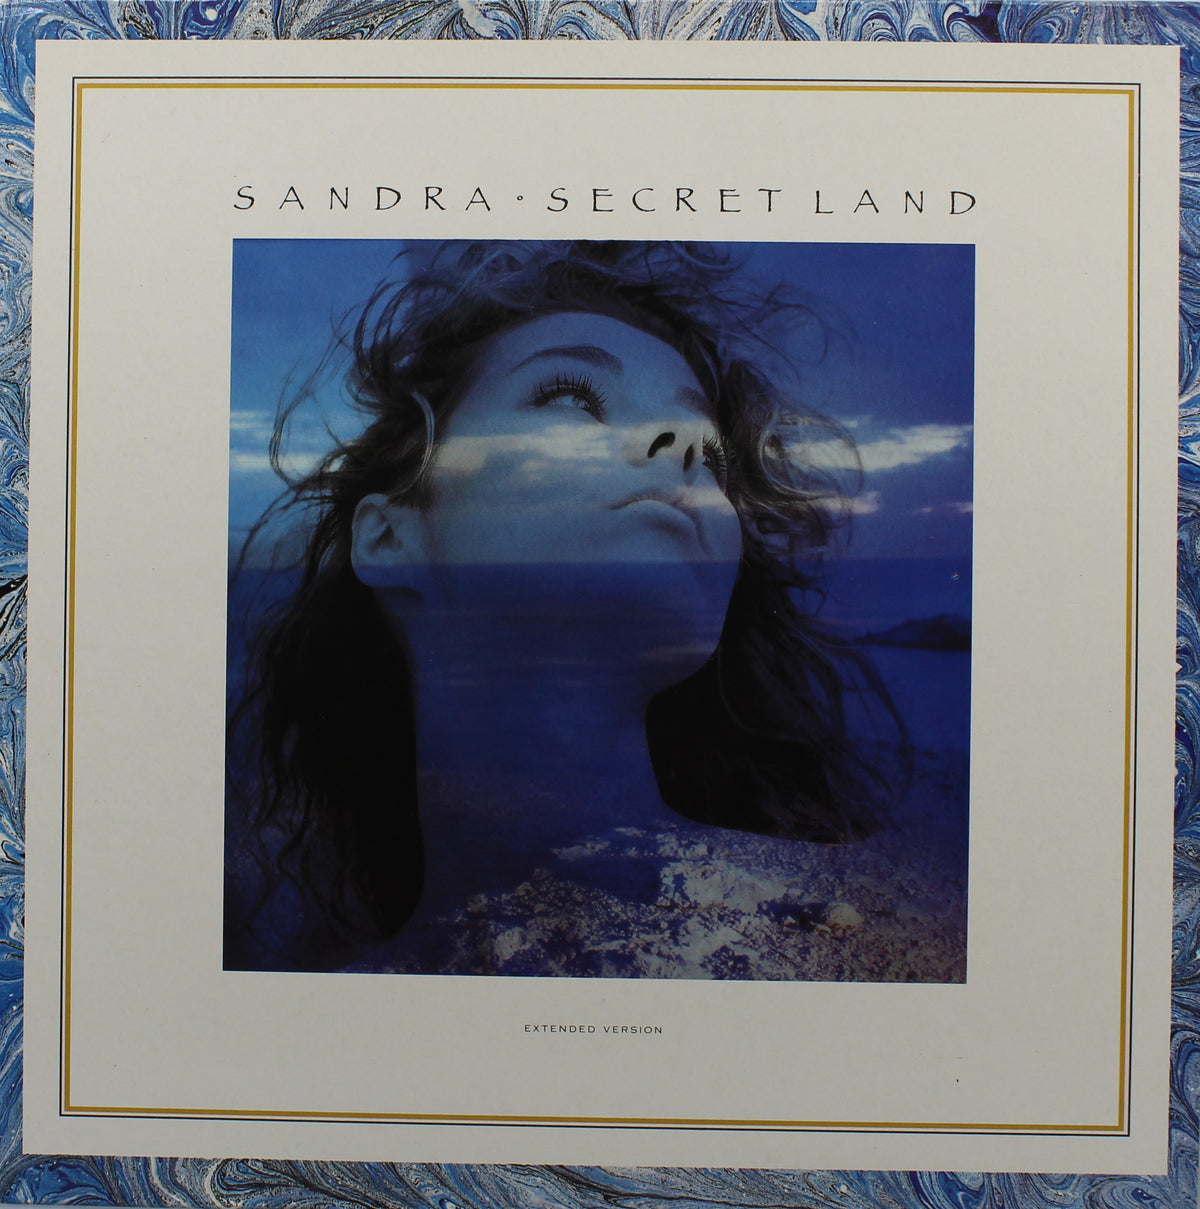 Sandra – Secret Land (Extended Version), Vinyl, 12&quot;, 45 RPM, Stereo, NM/VG+, France 1988